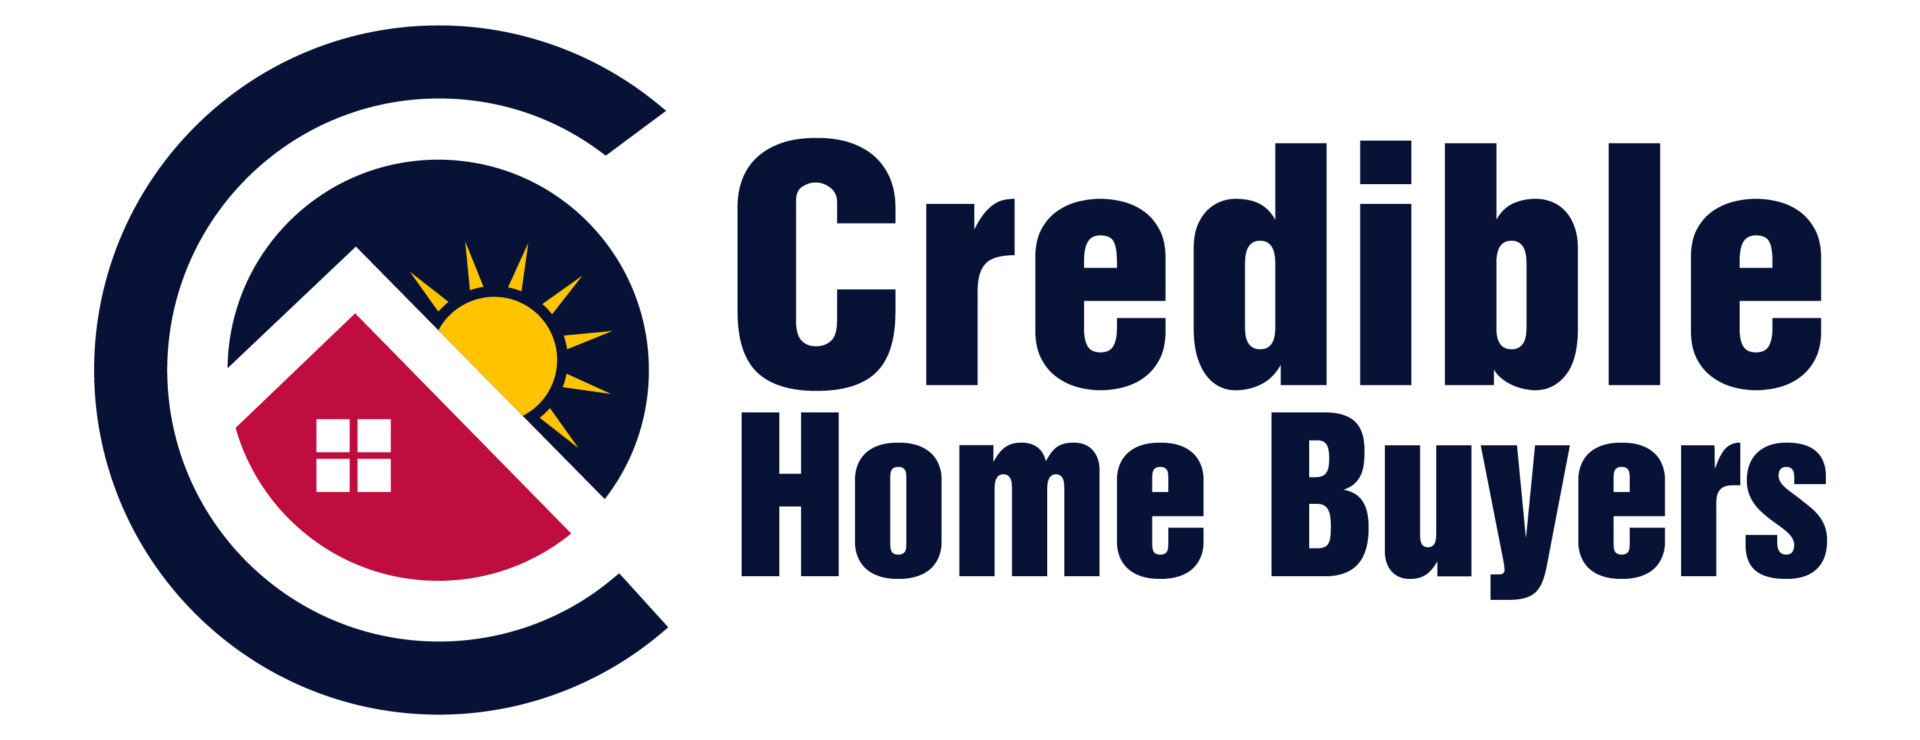 Credible Home Buyers  logo